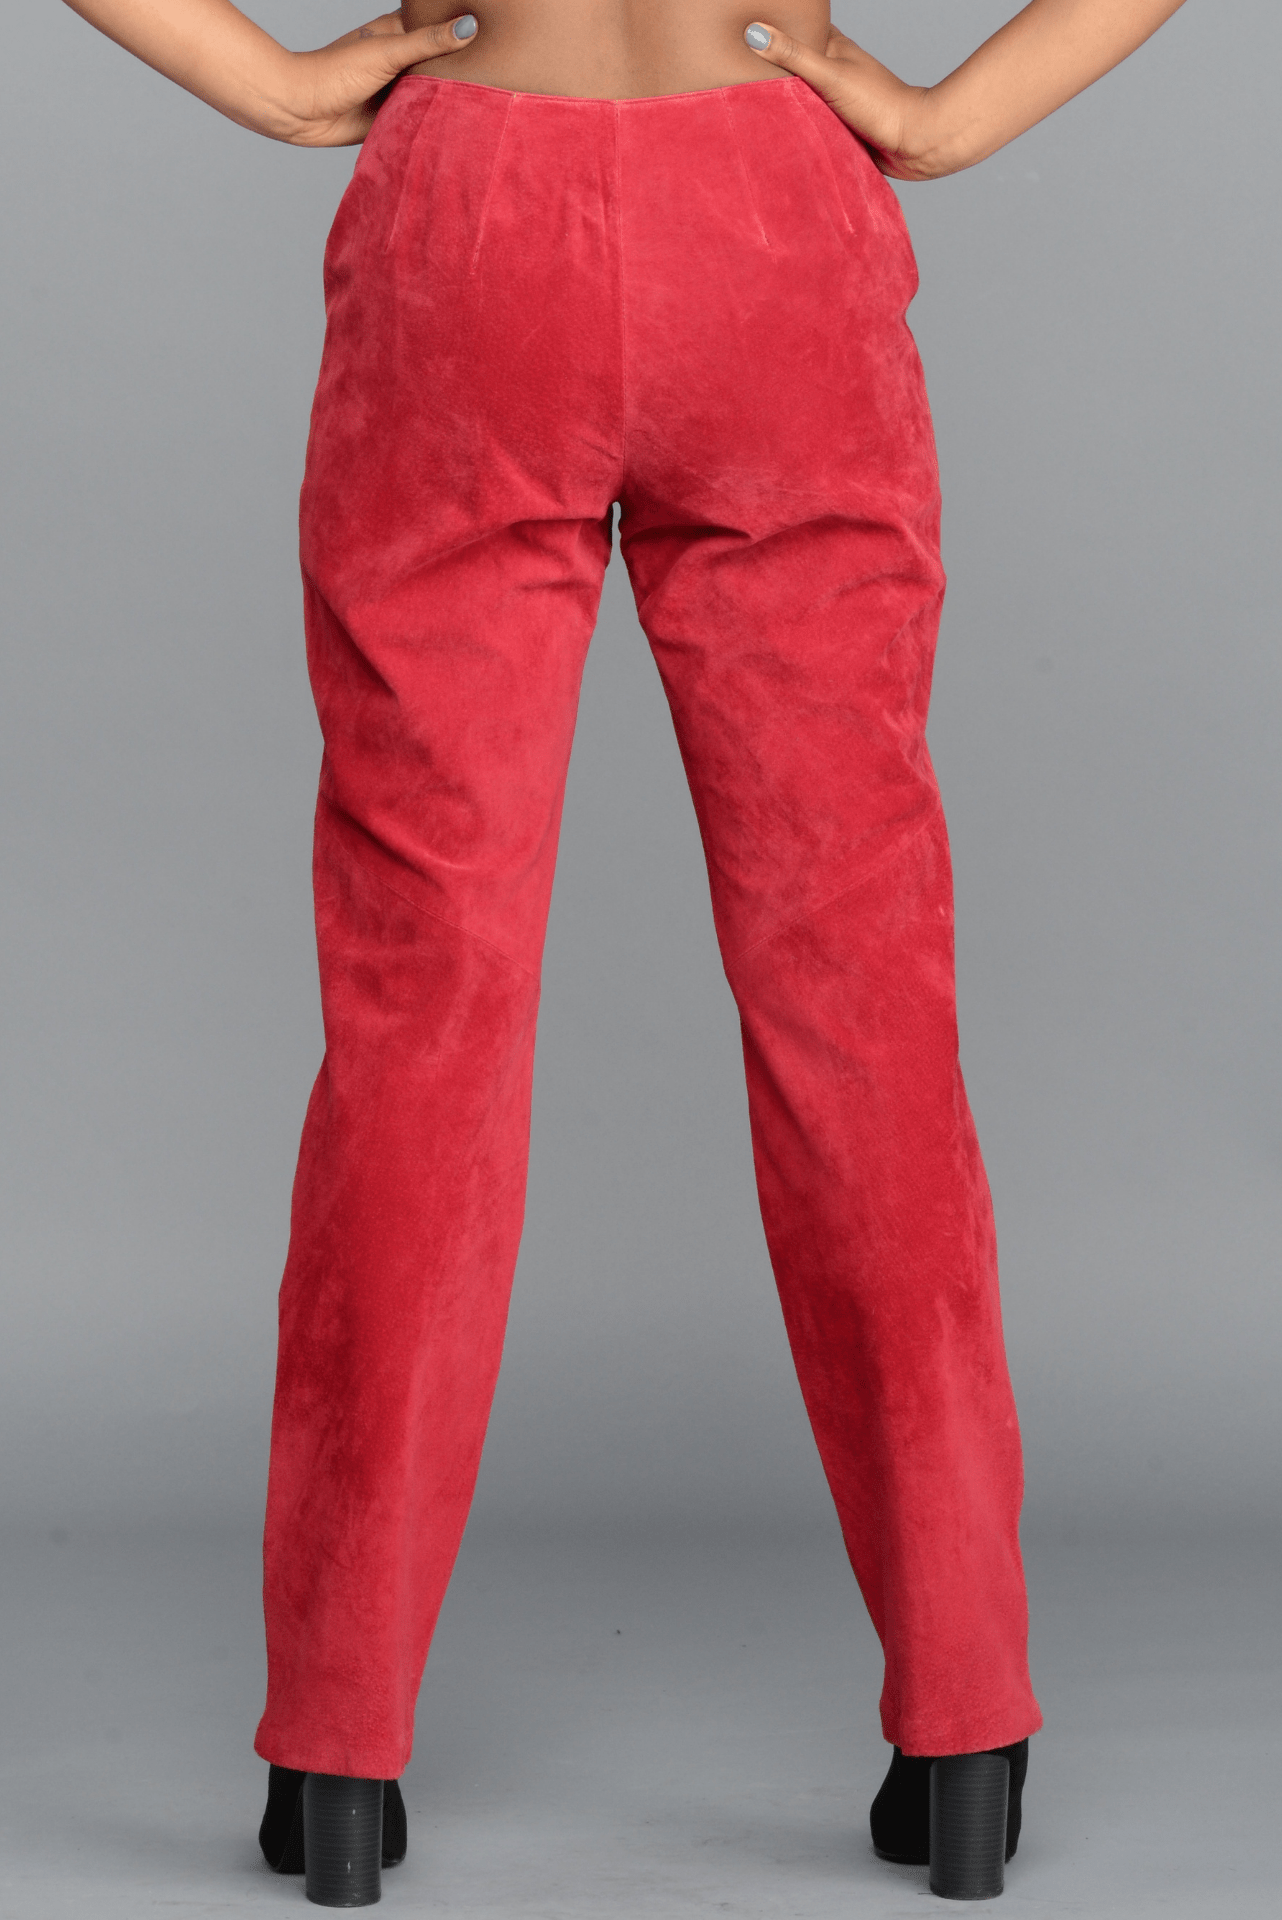 The Red Velvet Pants